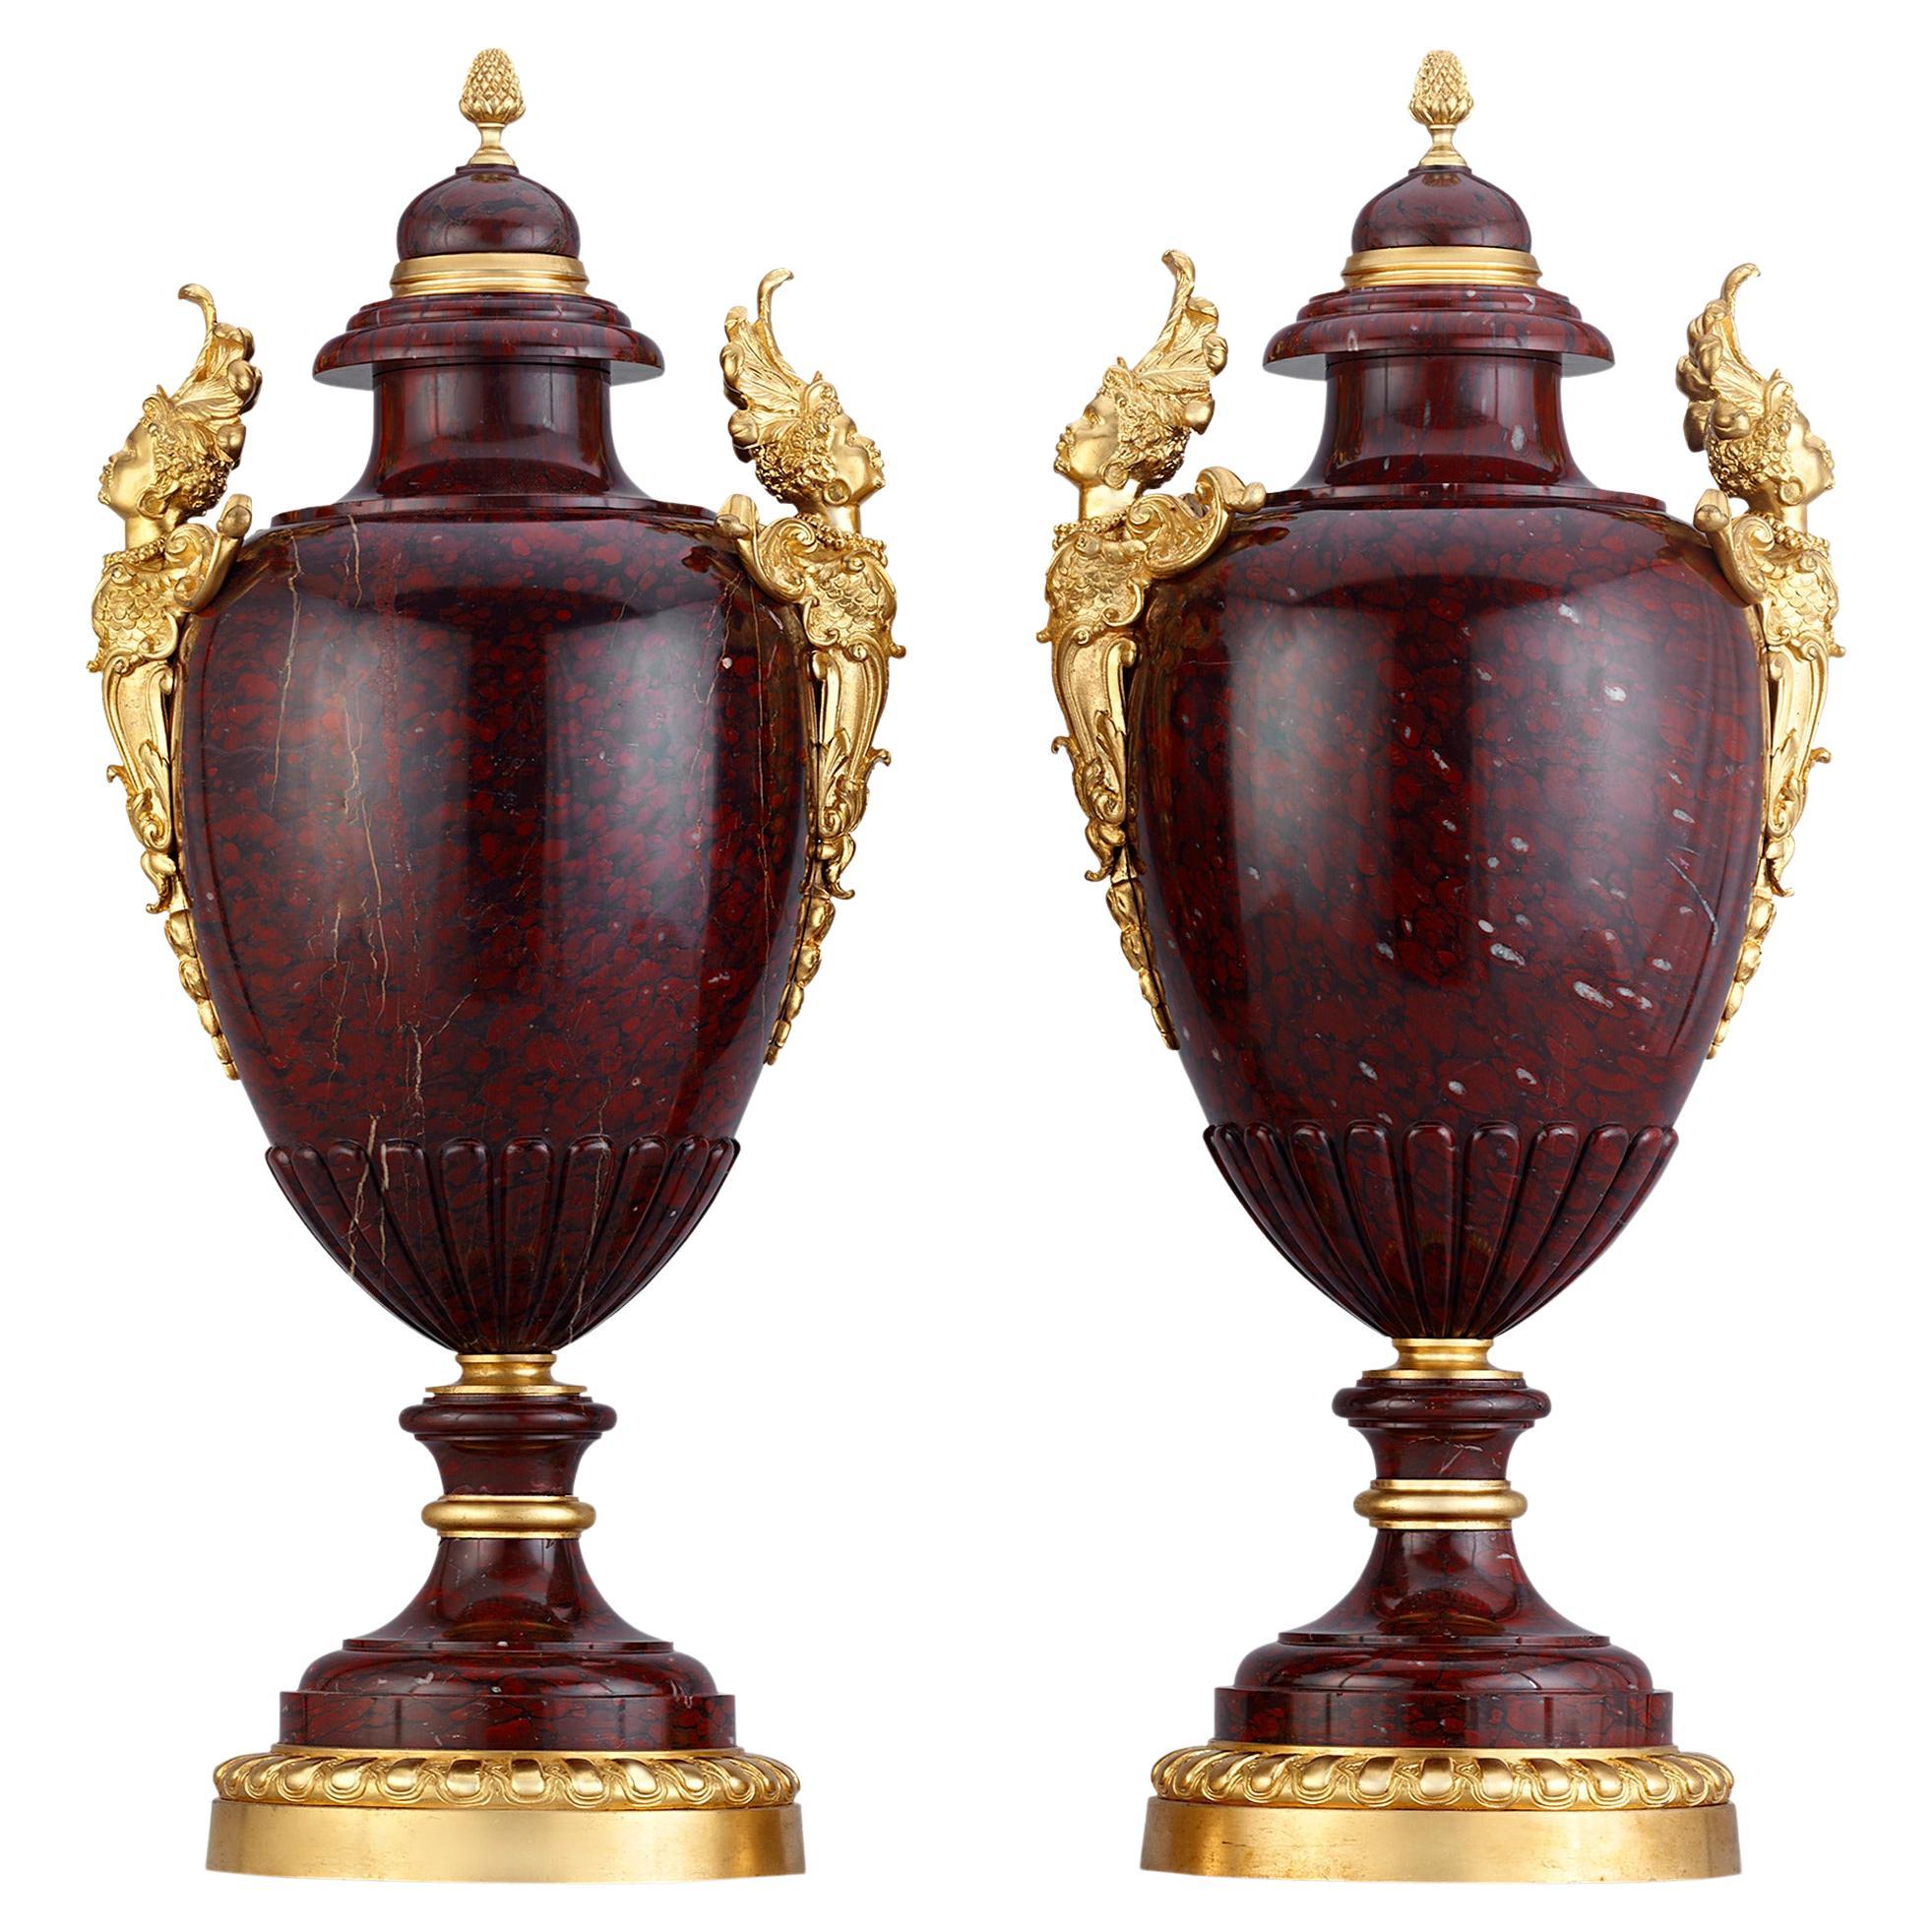 Griotte Rouge-Vasen, Charles-Henri-Joseph Cordier zugeschrieben